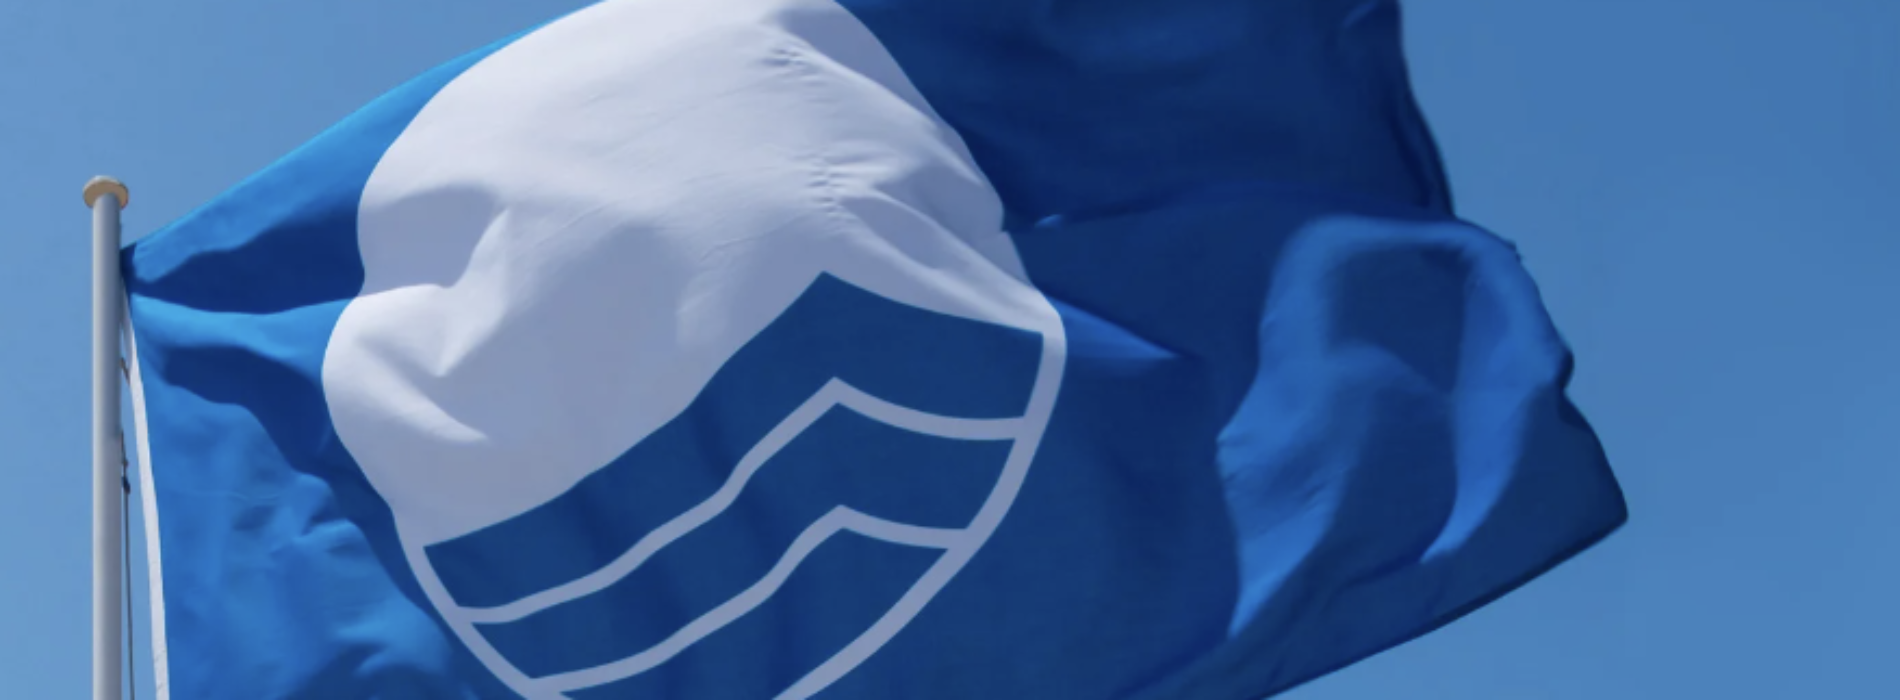 Bandiera Blu sul litorale Domitio, riconoscimento per Cellole